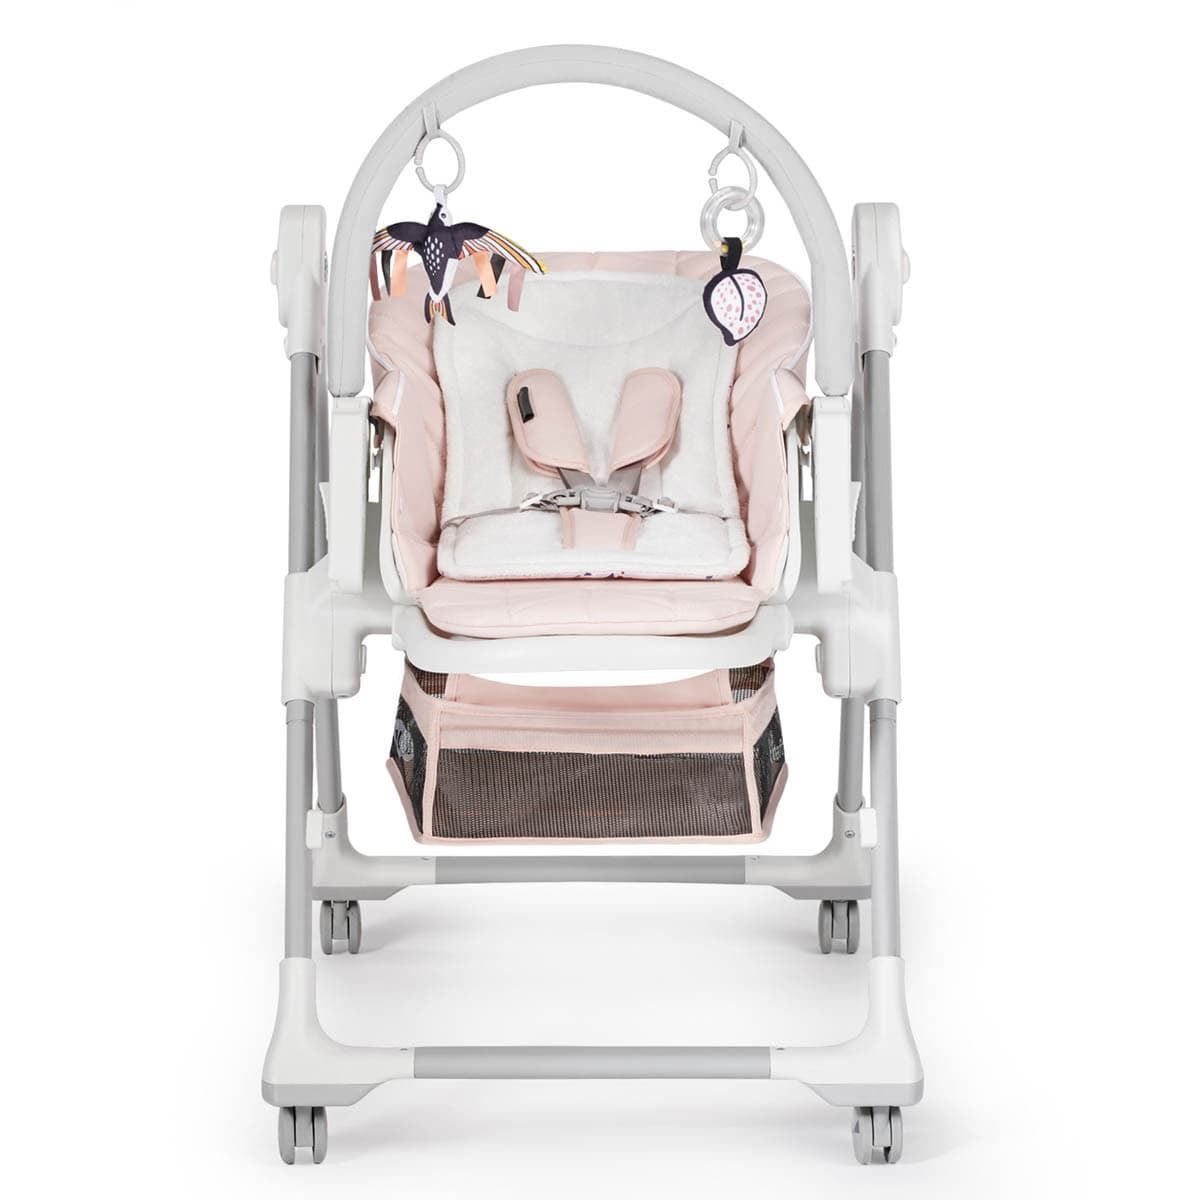 Trona bebe ligera multi posiciones Asiento regulable con bandeja extraíble  Fácil plegado Acolchado y cómodo rosa